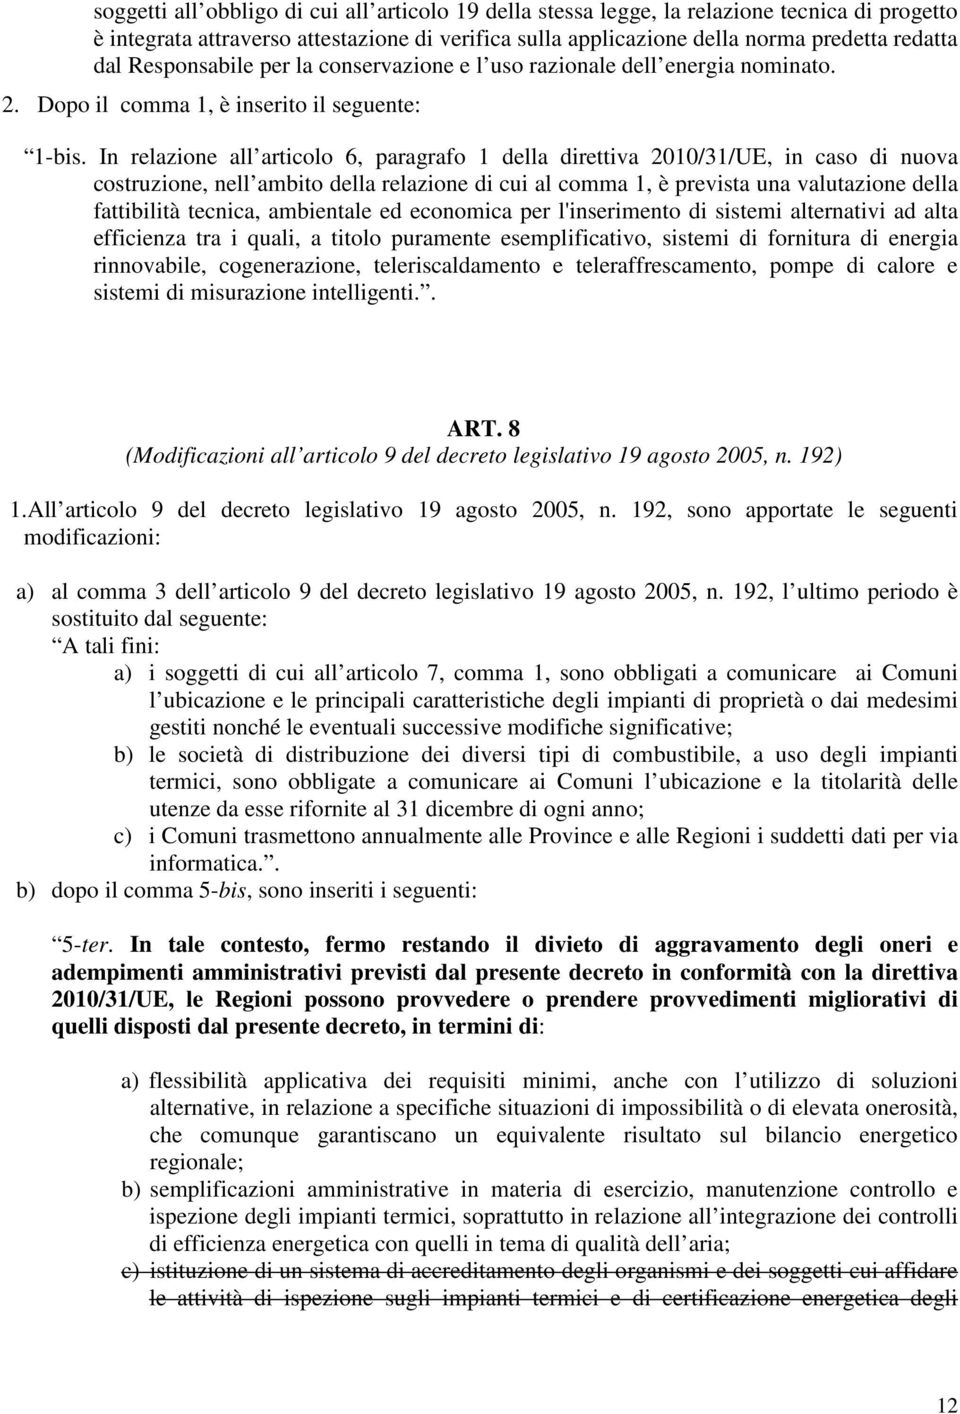 In relazione all articolo 6, paragrafo 1 della direttiva 2010/31/UE, in caso di nuova costruzione, nell ambito della relazione di cui al comma 1, è prevista una valutazione della fattibilità tecnica,